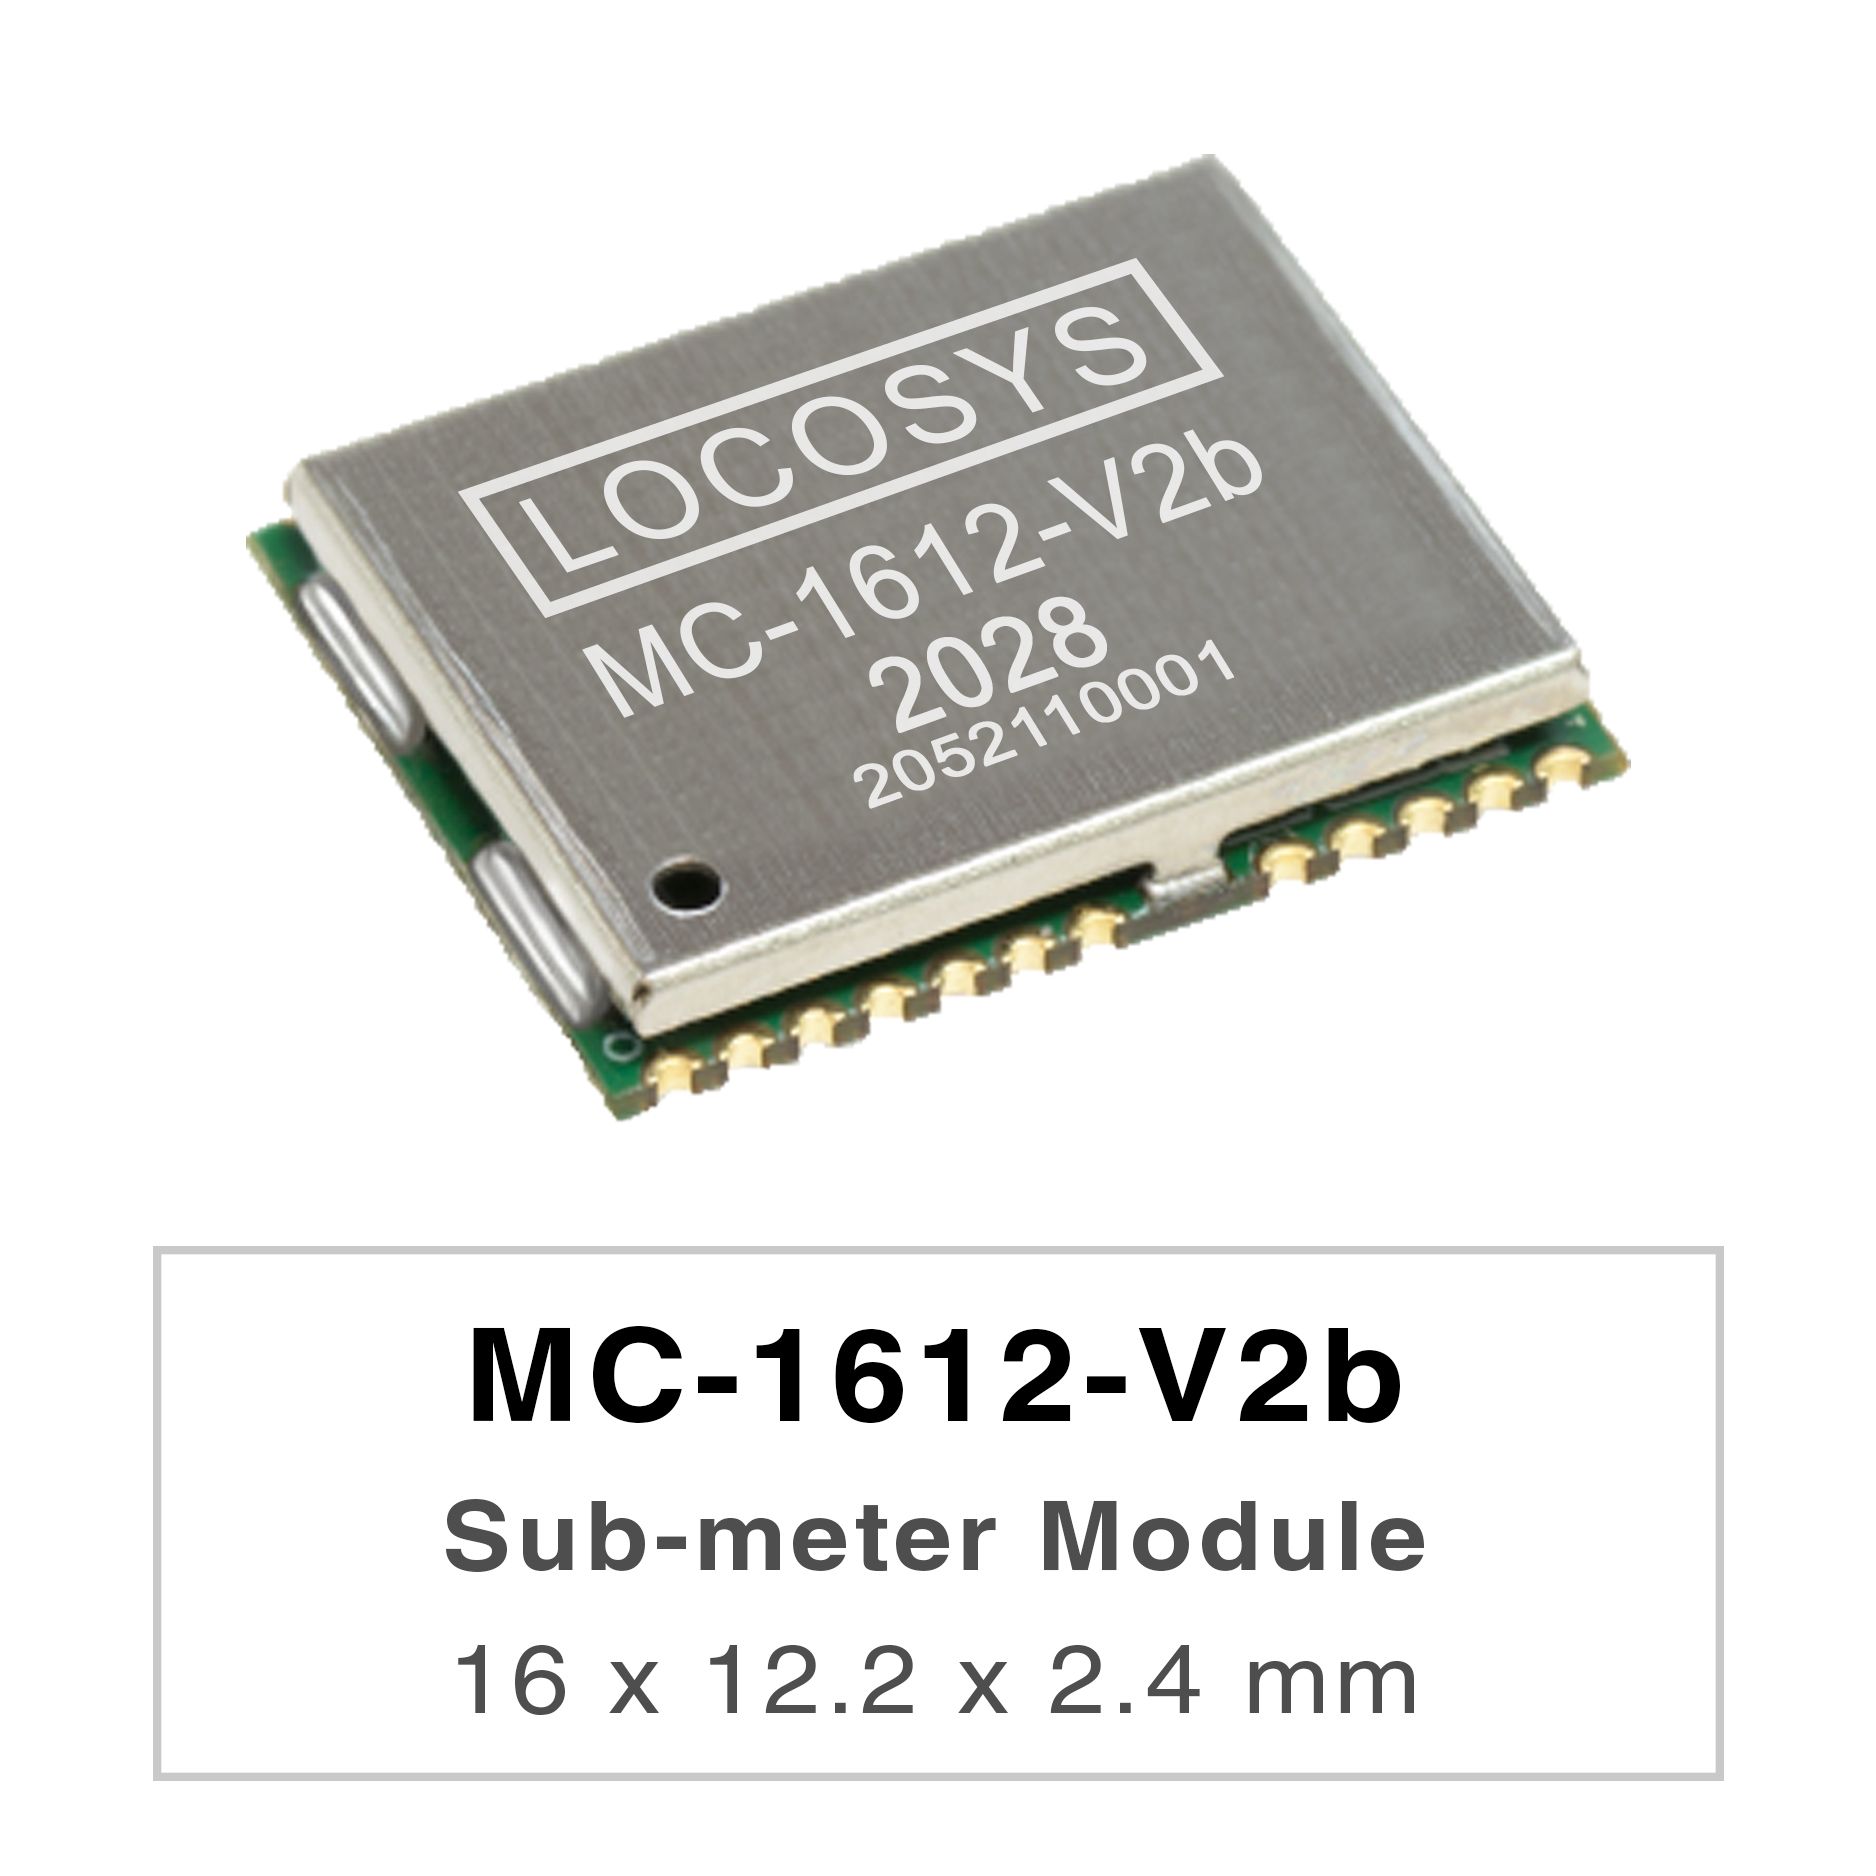 Les séries LOCOSYS MC-1612-Vxx sont des modules de positionnement GNSS bi-bande hautes performances
<br />capables de suivre tous les systèmes de navigation civile mondiaux. Ils adoptent un processus de 12 nm et intègrent une
<br />architecture de gestion de l'alimentation efficace pour une faible consommation d'énergie et une sensibilité élevée.